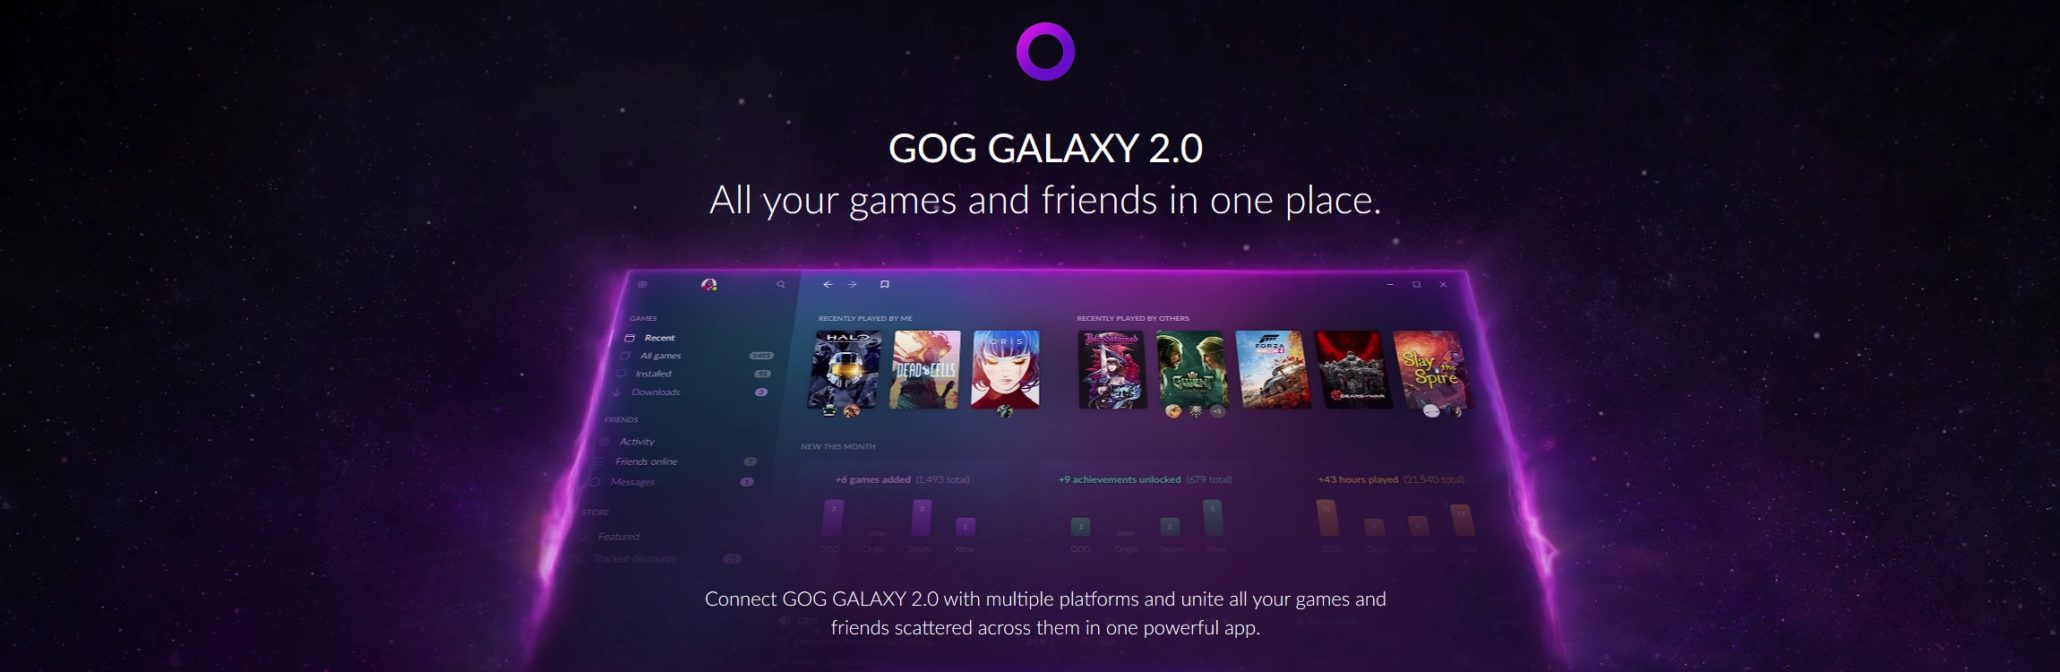 GOG Galaxy 2.0 01 Header 1